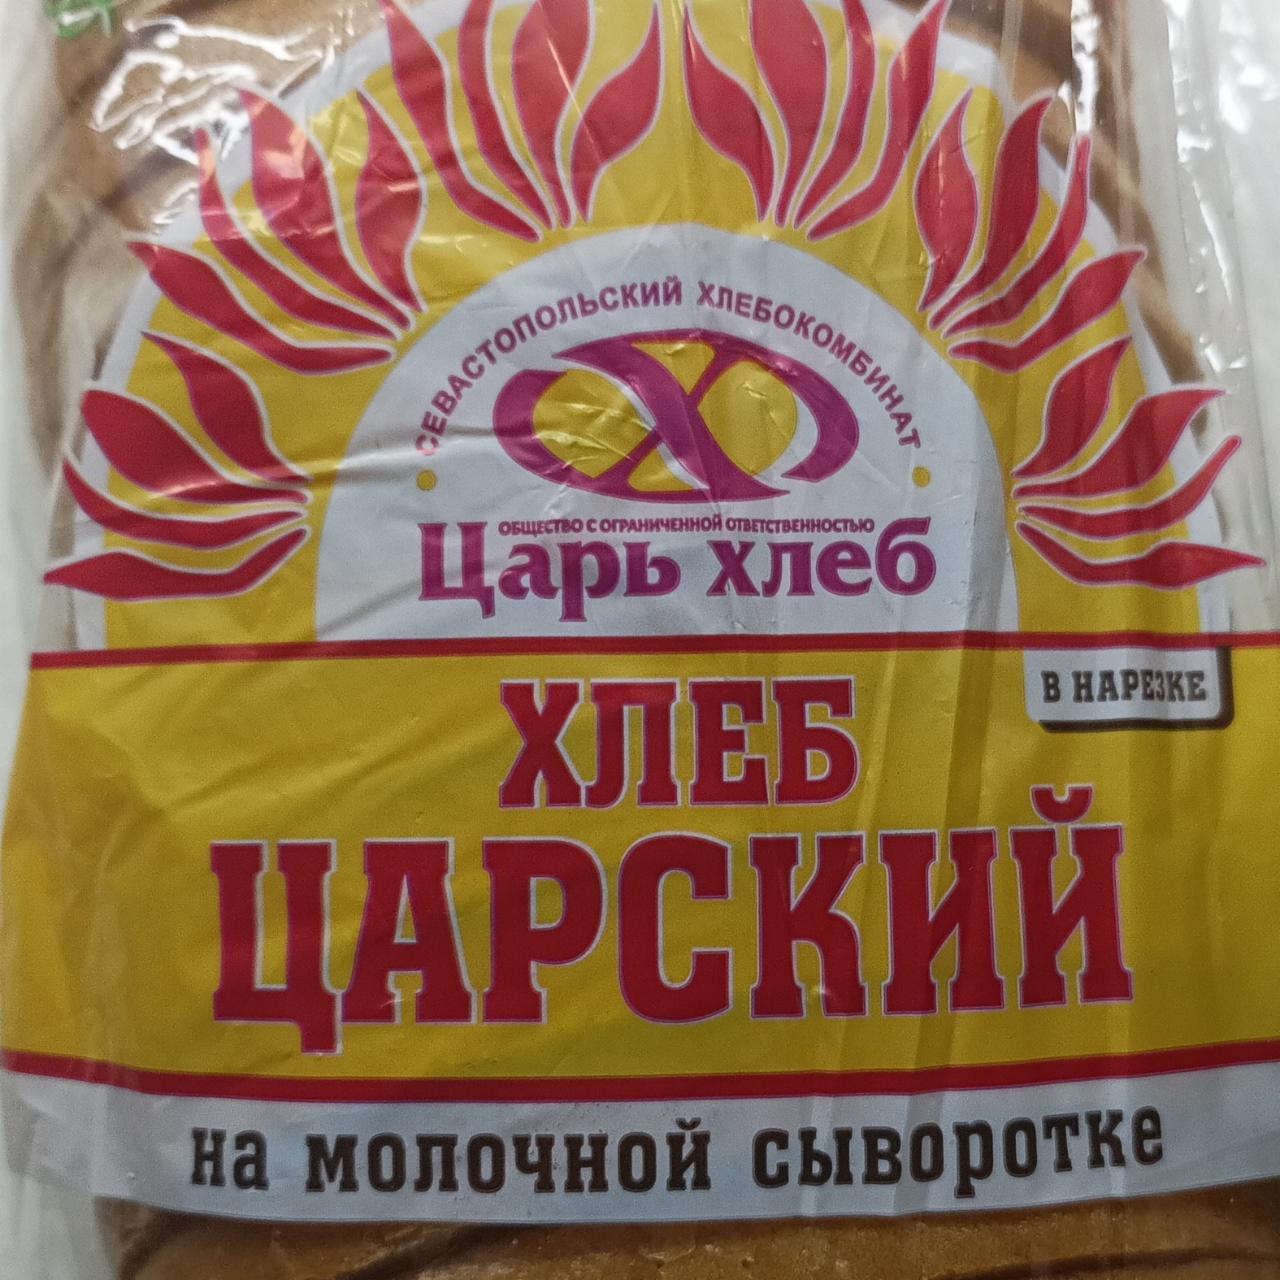 Фото - Хлеб Царский на молочной сыворотке Царь хлеб